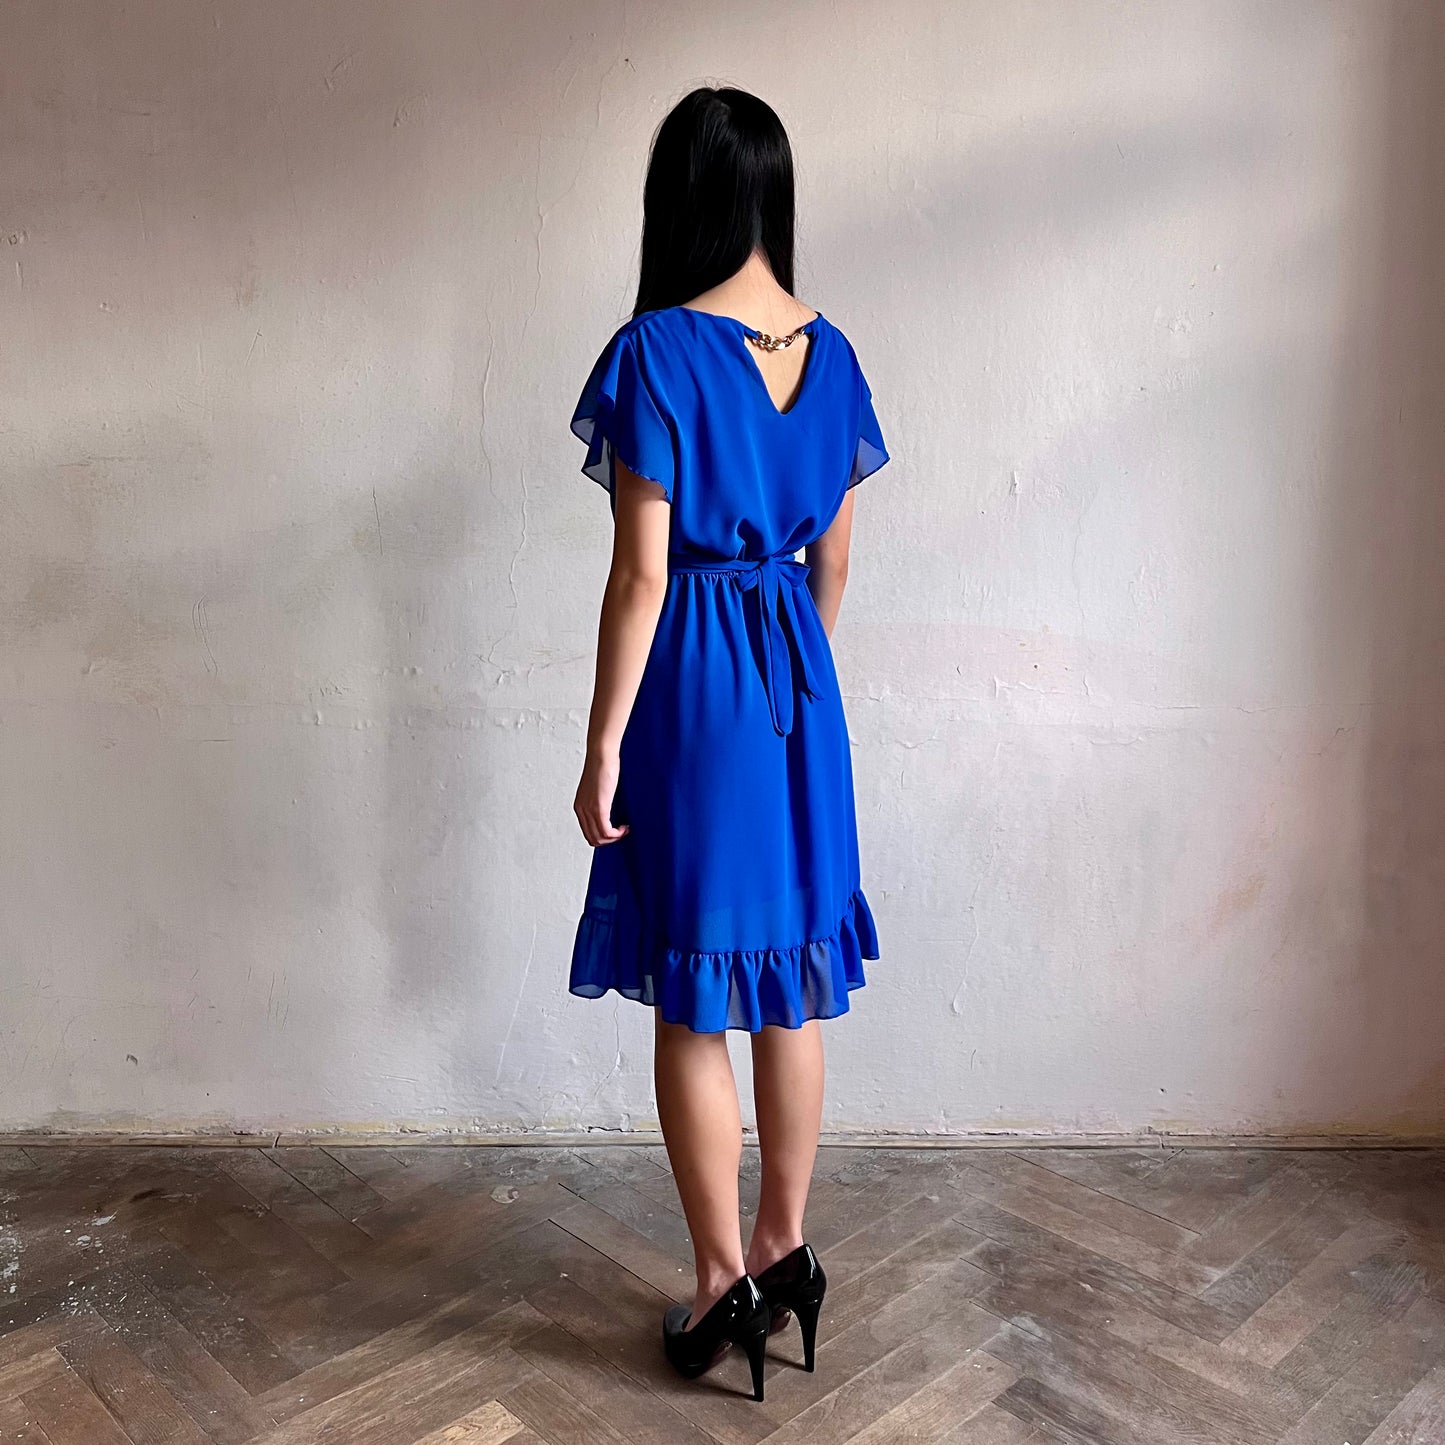 Modelka asijského původu pózující z boku oblečená ve krátkých modrých společenských šatech s volány